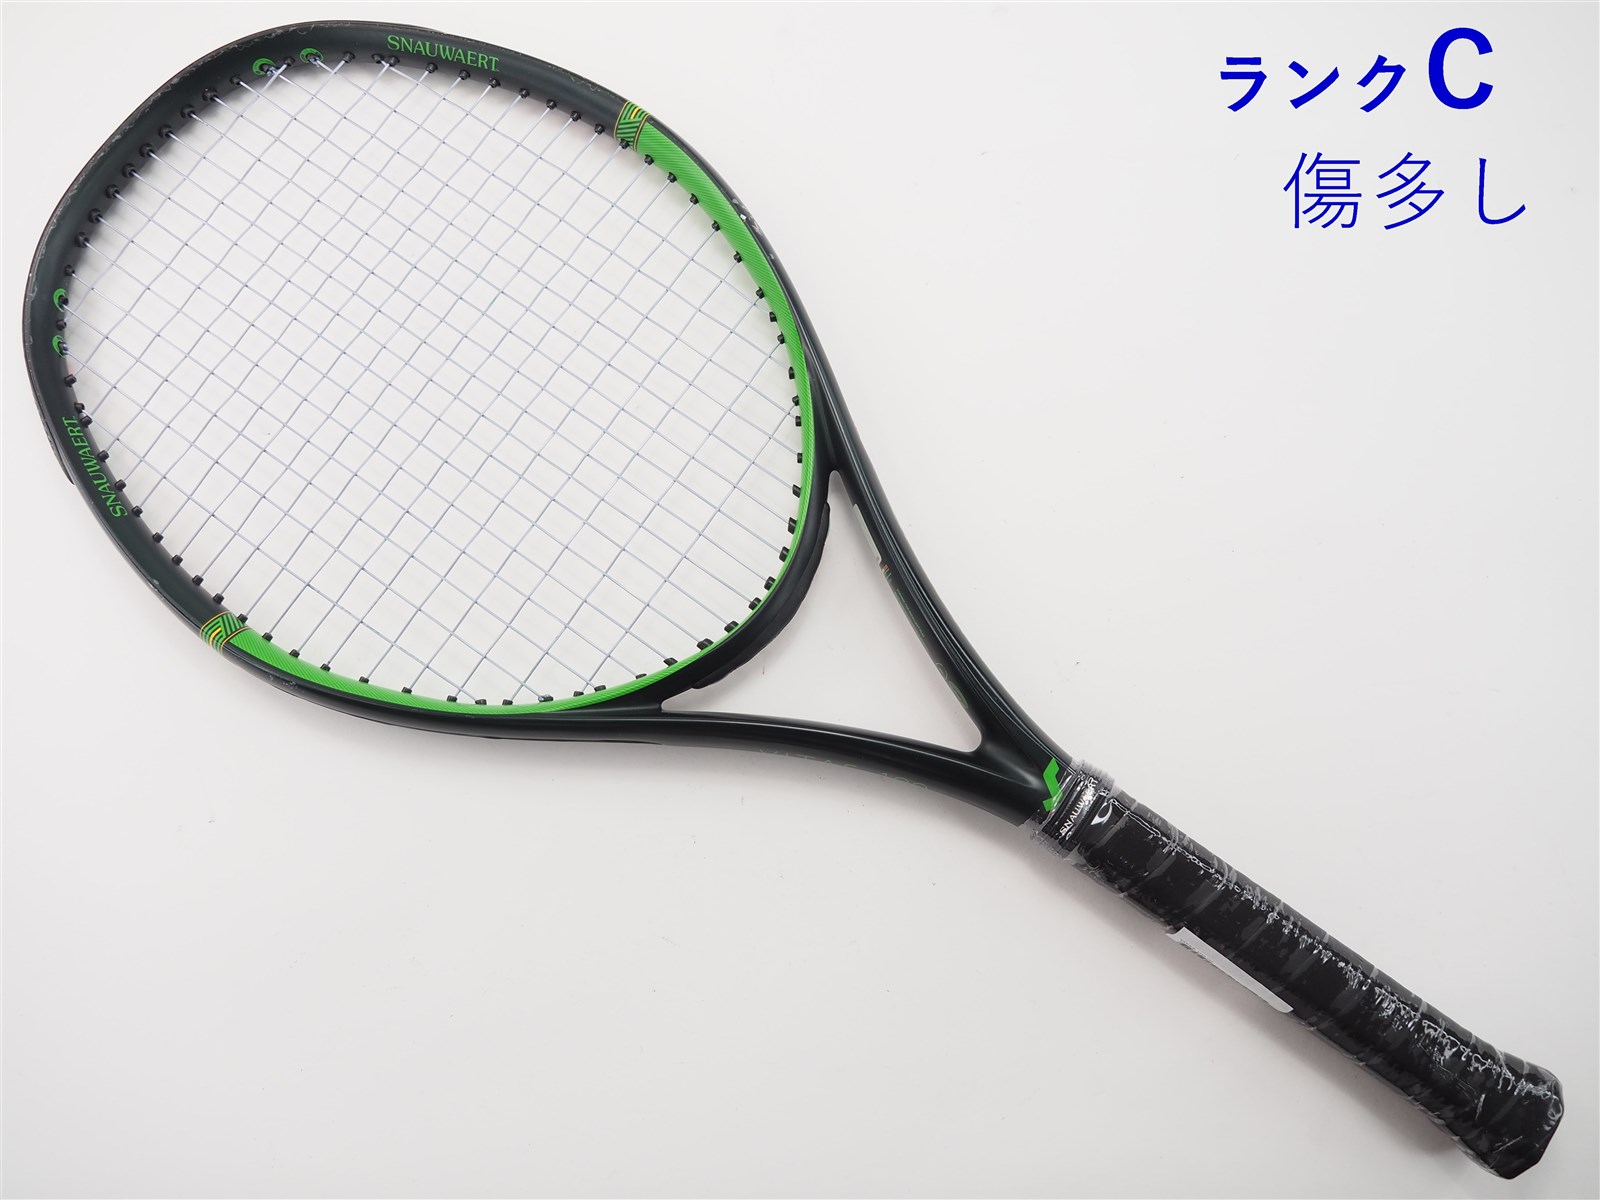 テニスラケット スノワート ビタス 100 (G2)SNAUWAERT VITAS 100B若干摩耗ありグリップサイズ